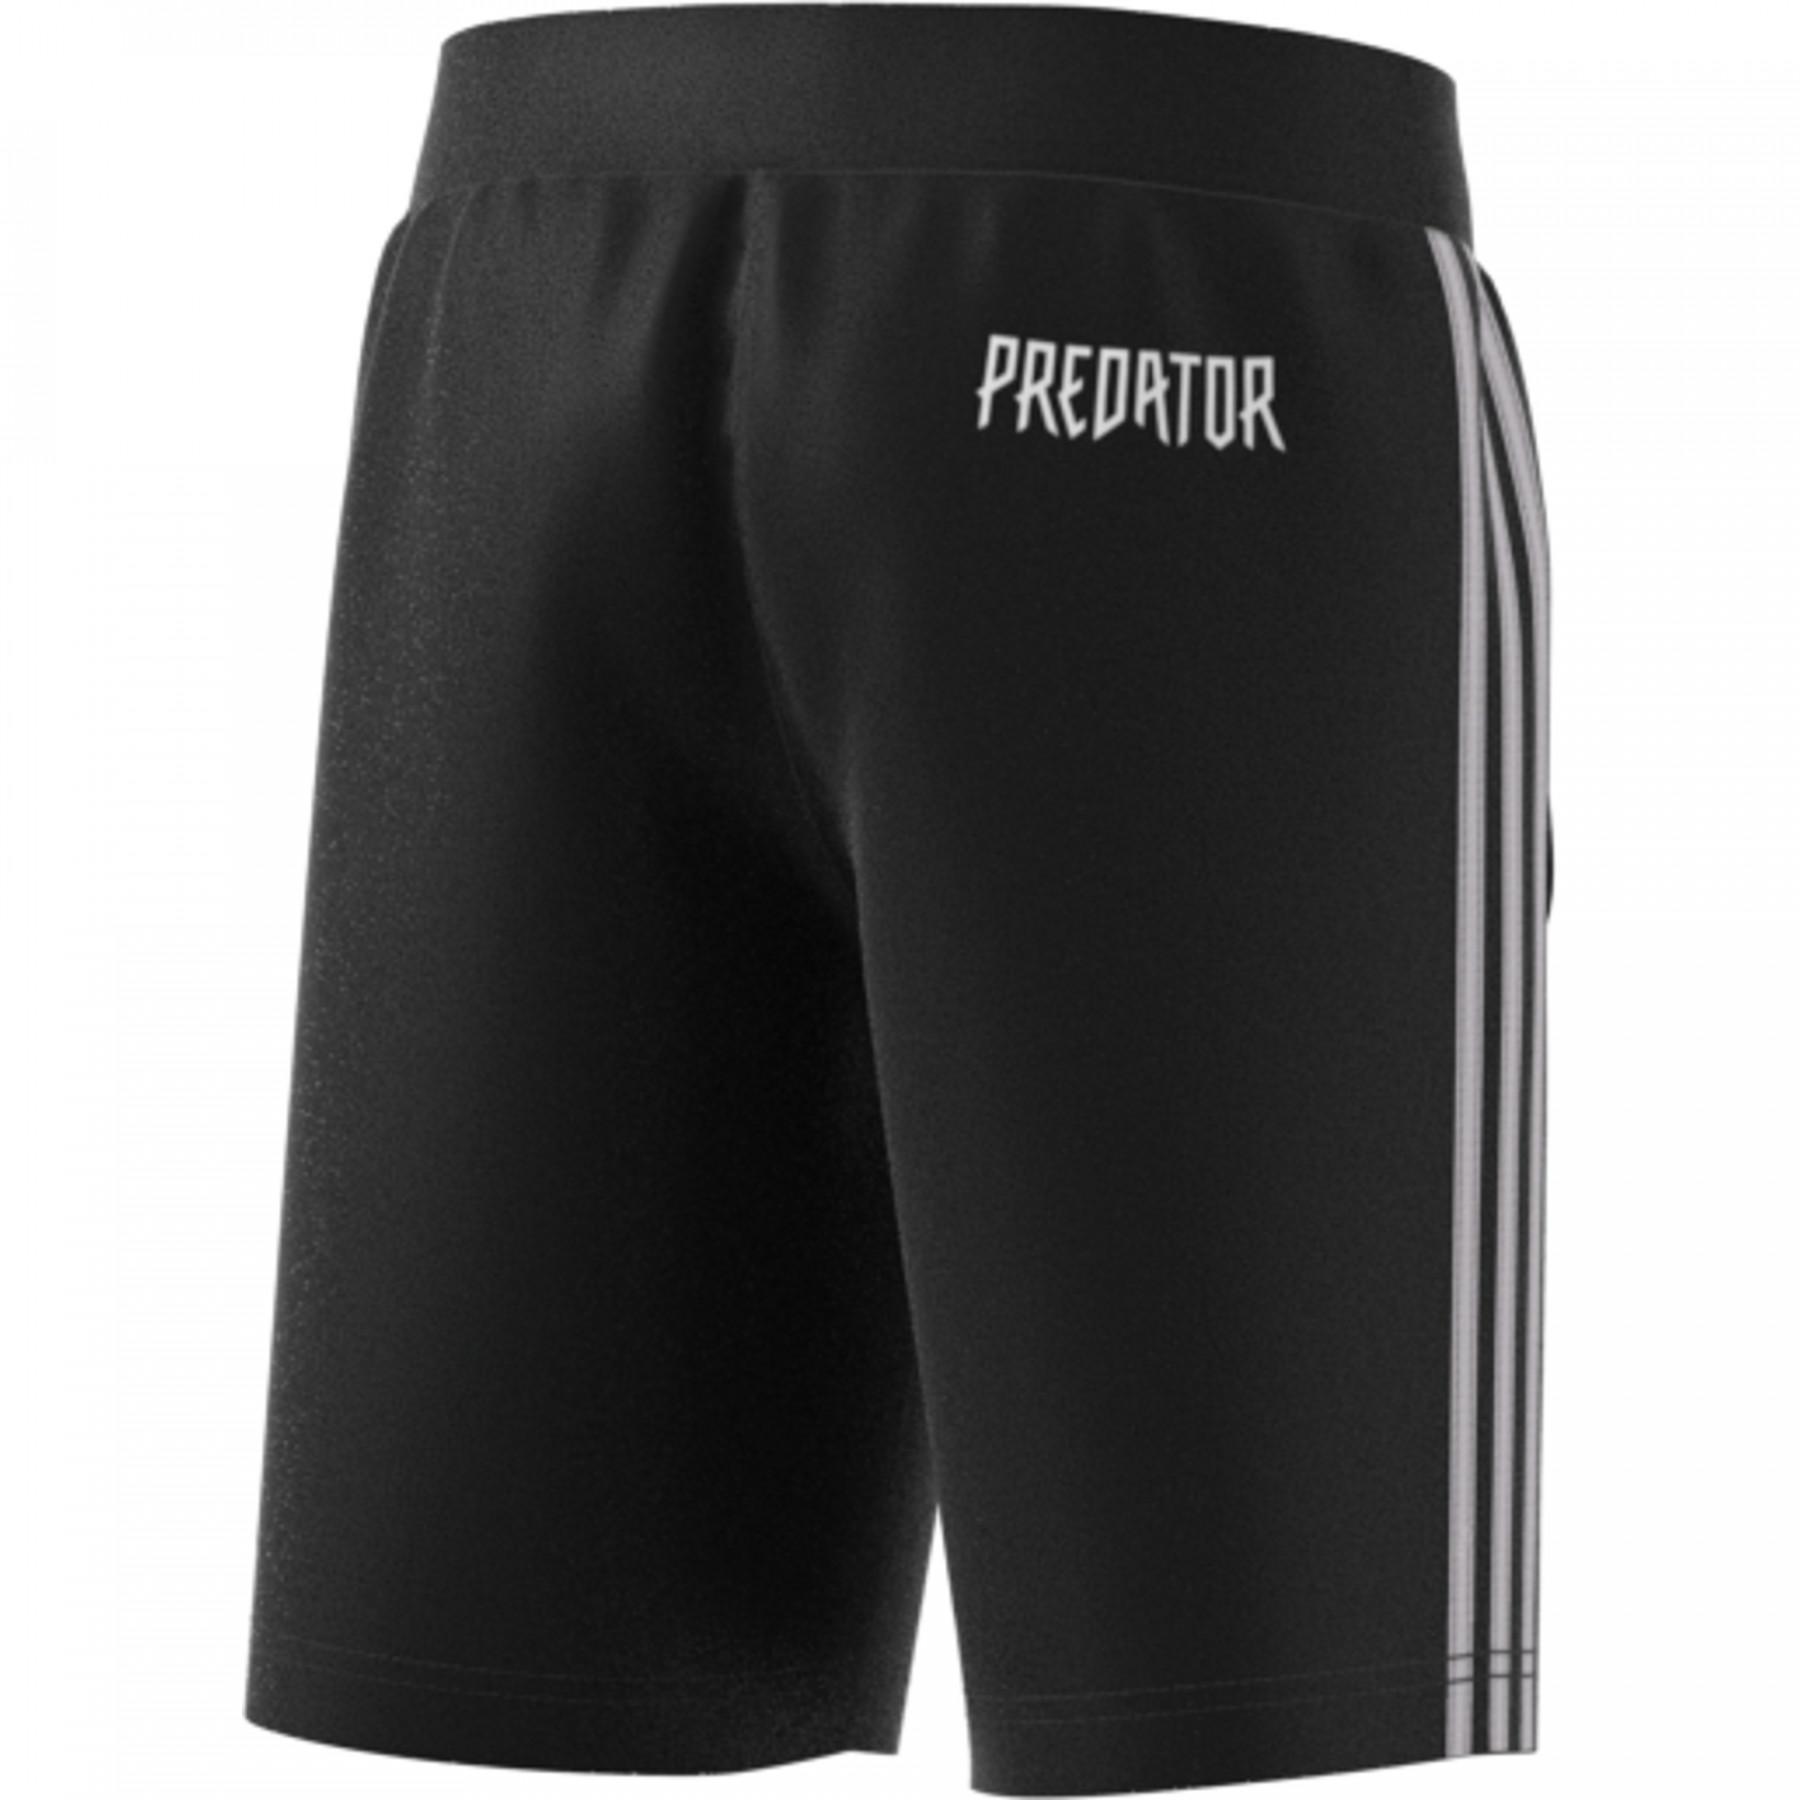 Pantalones cortos para niños adidas Preadator 3-Stripes